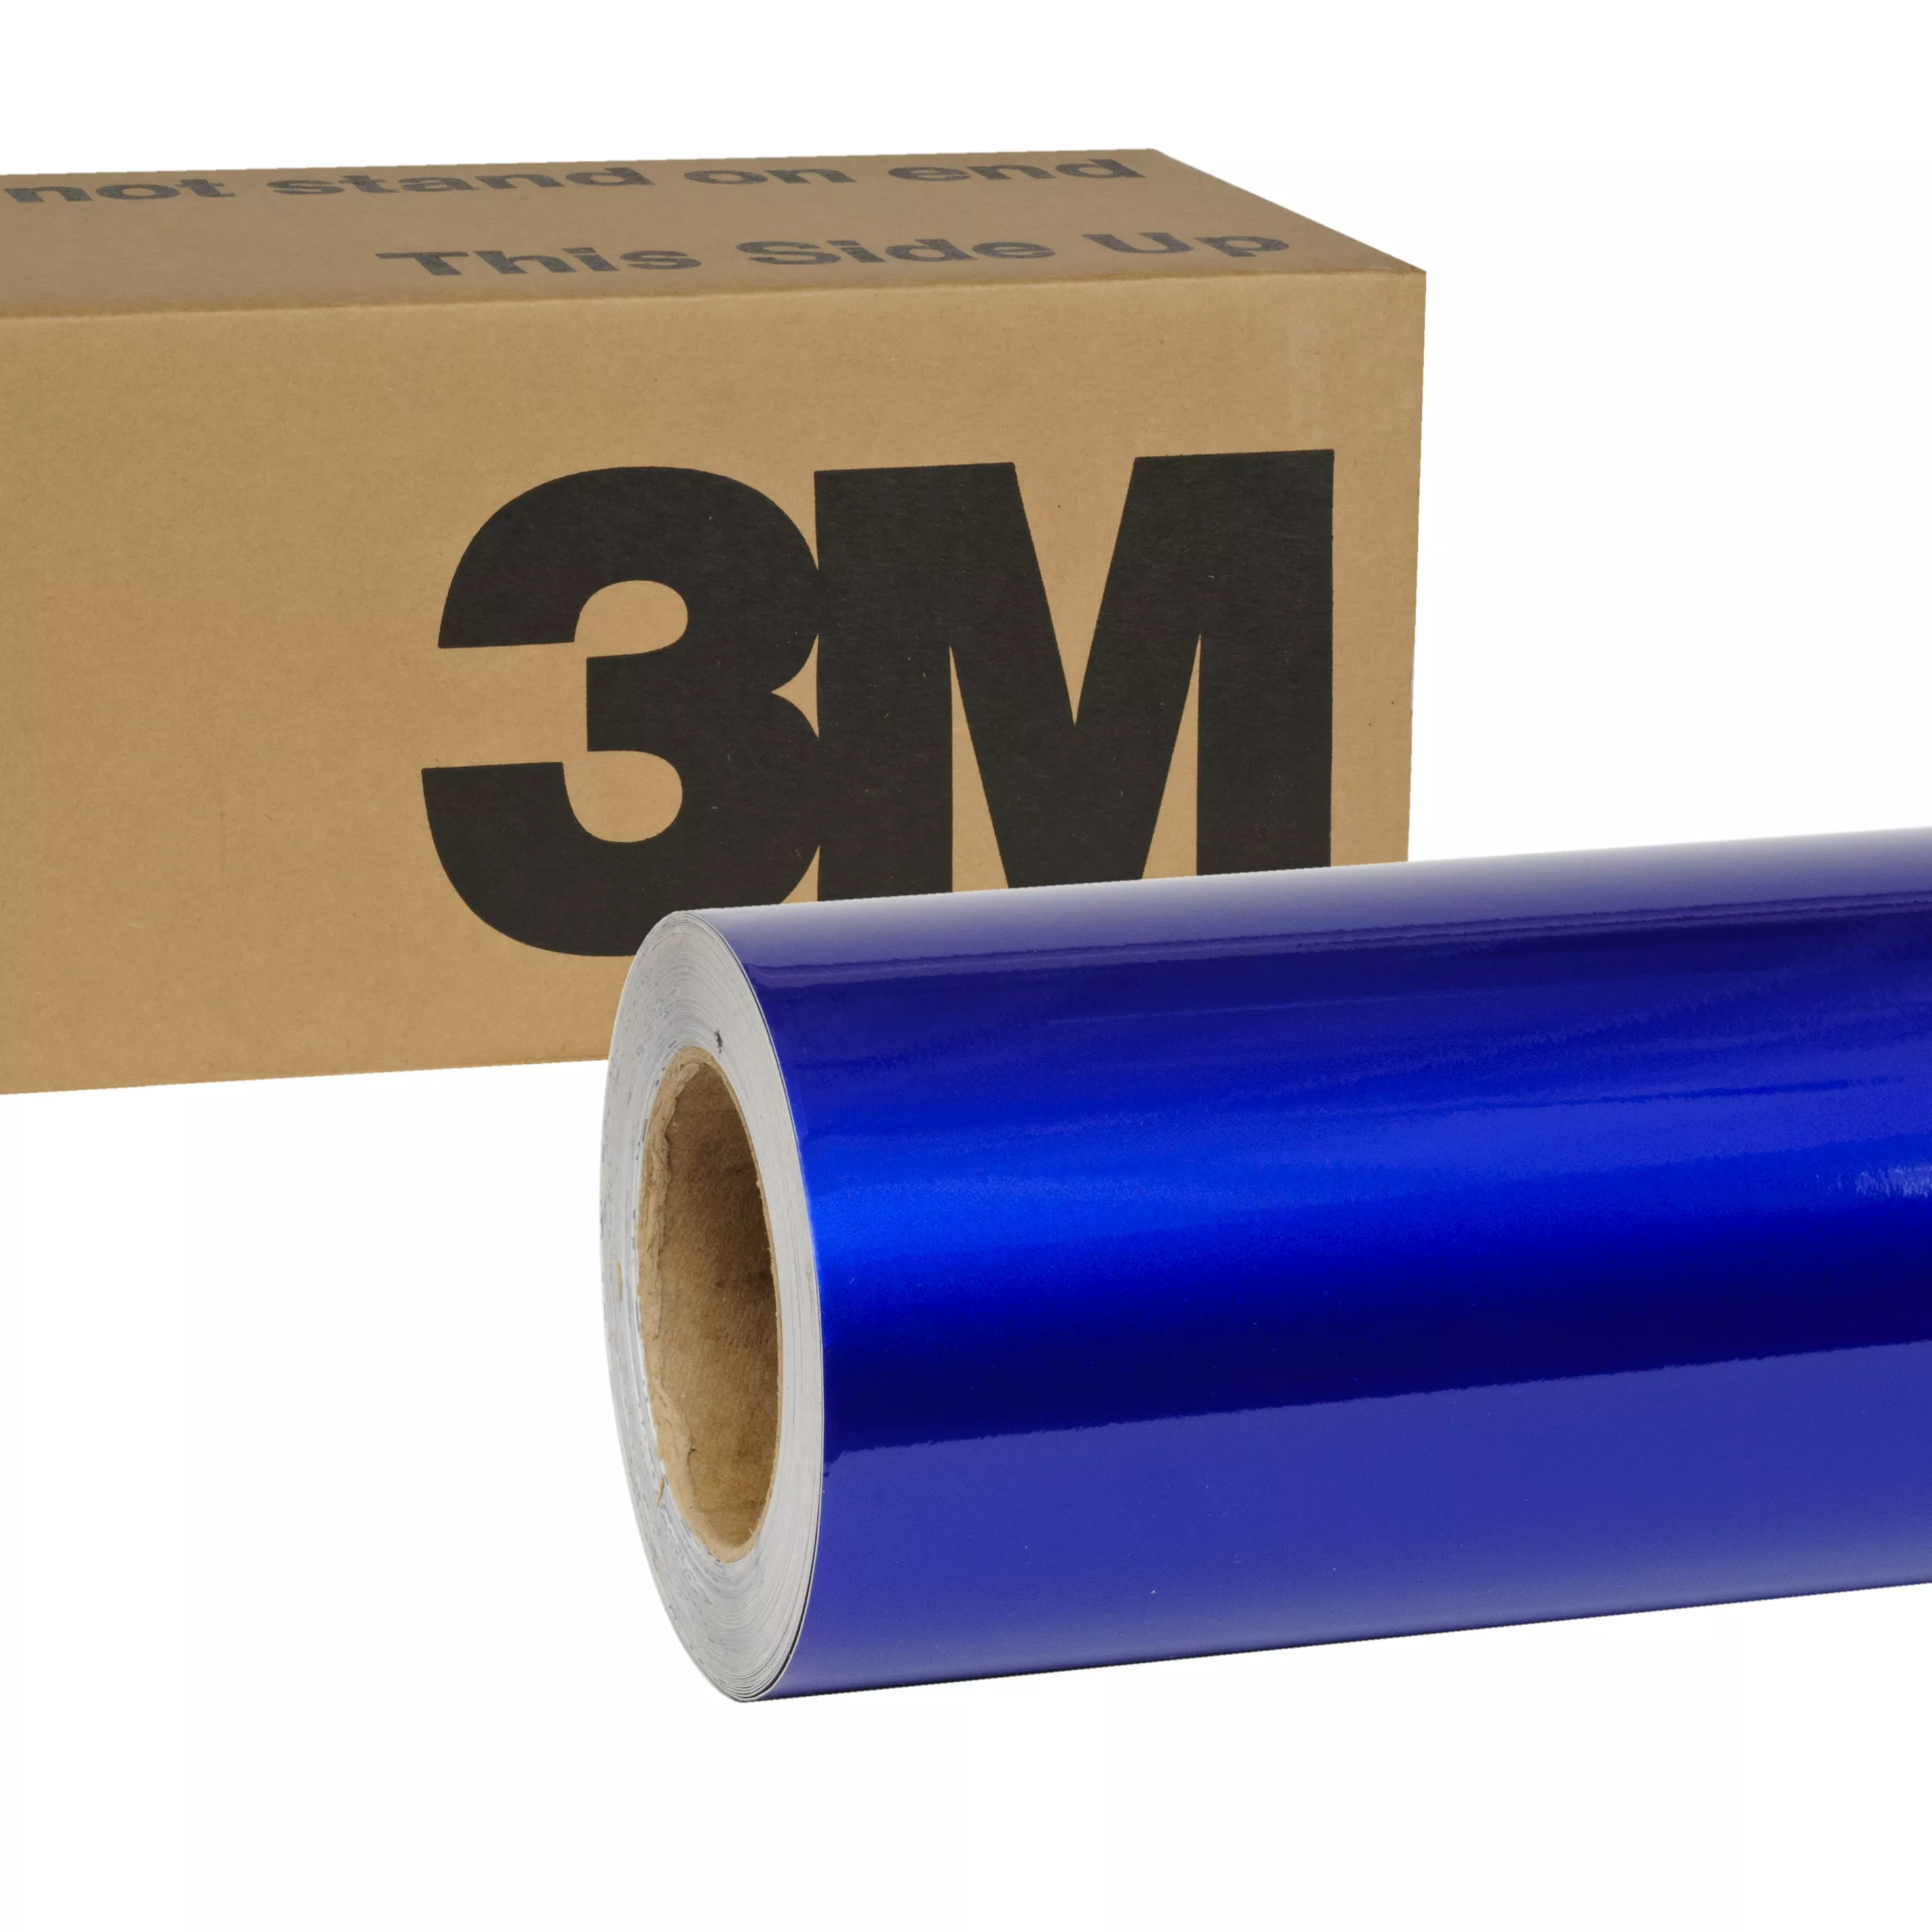 3M™ Wrap Film 1080-G378, Gloss Blue Raspberry, 60 in x 5 yd